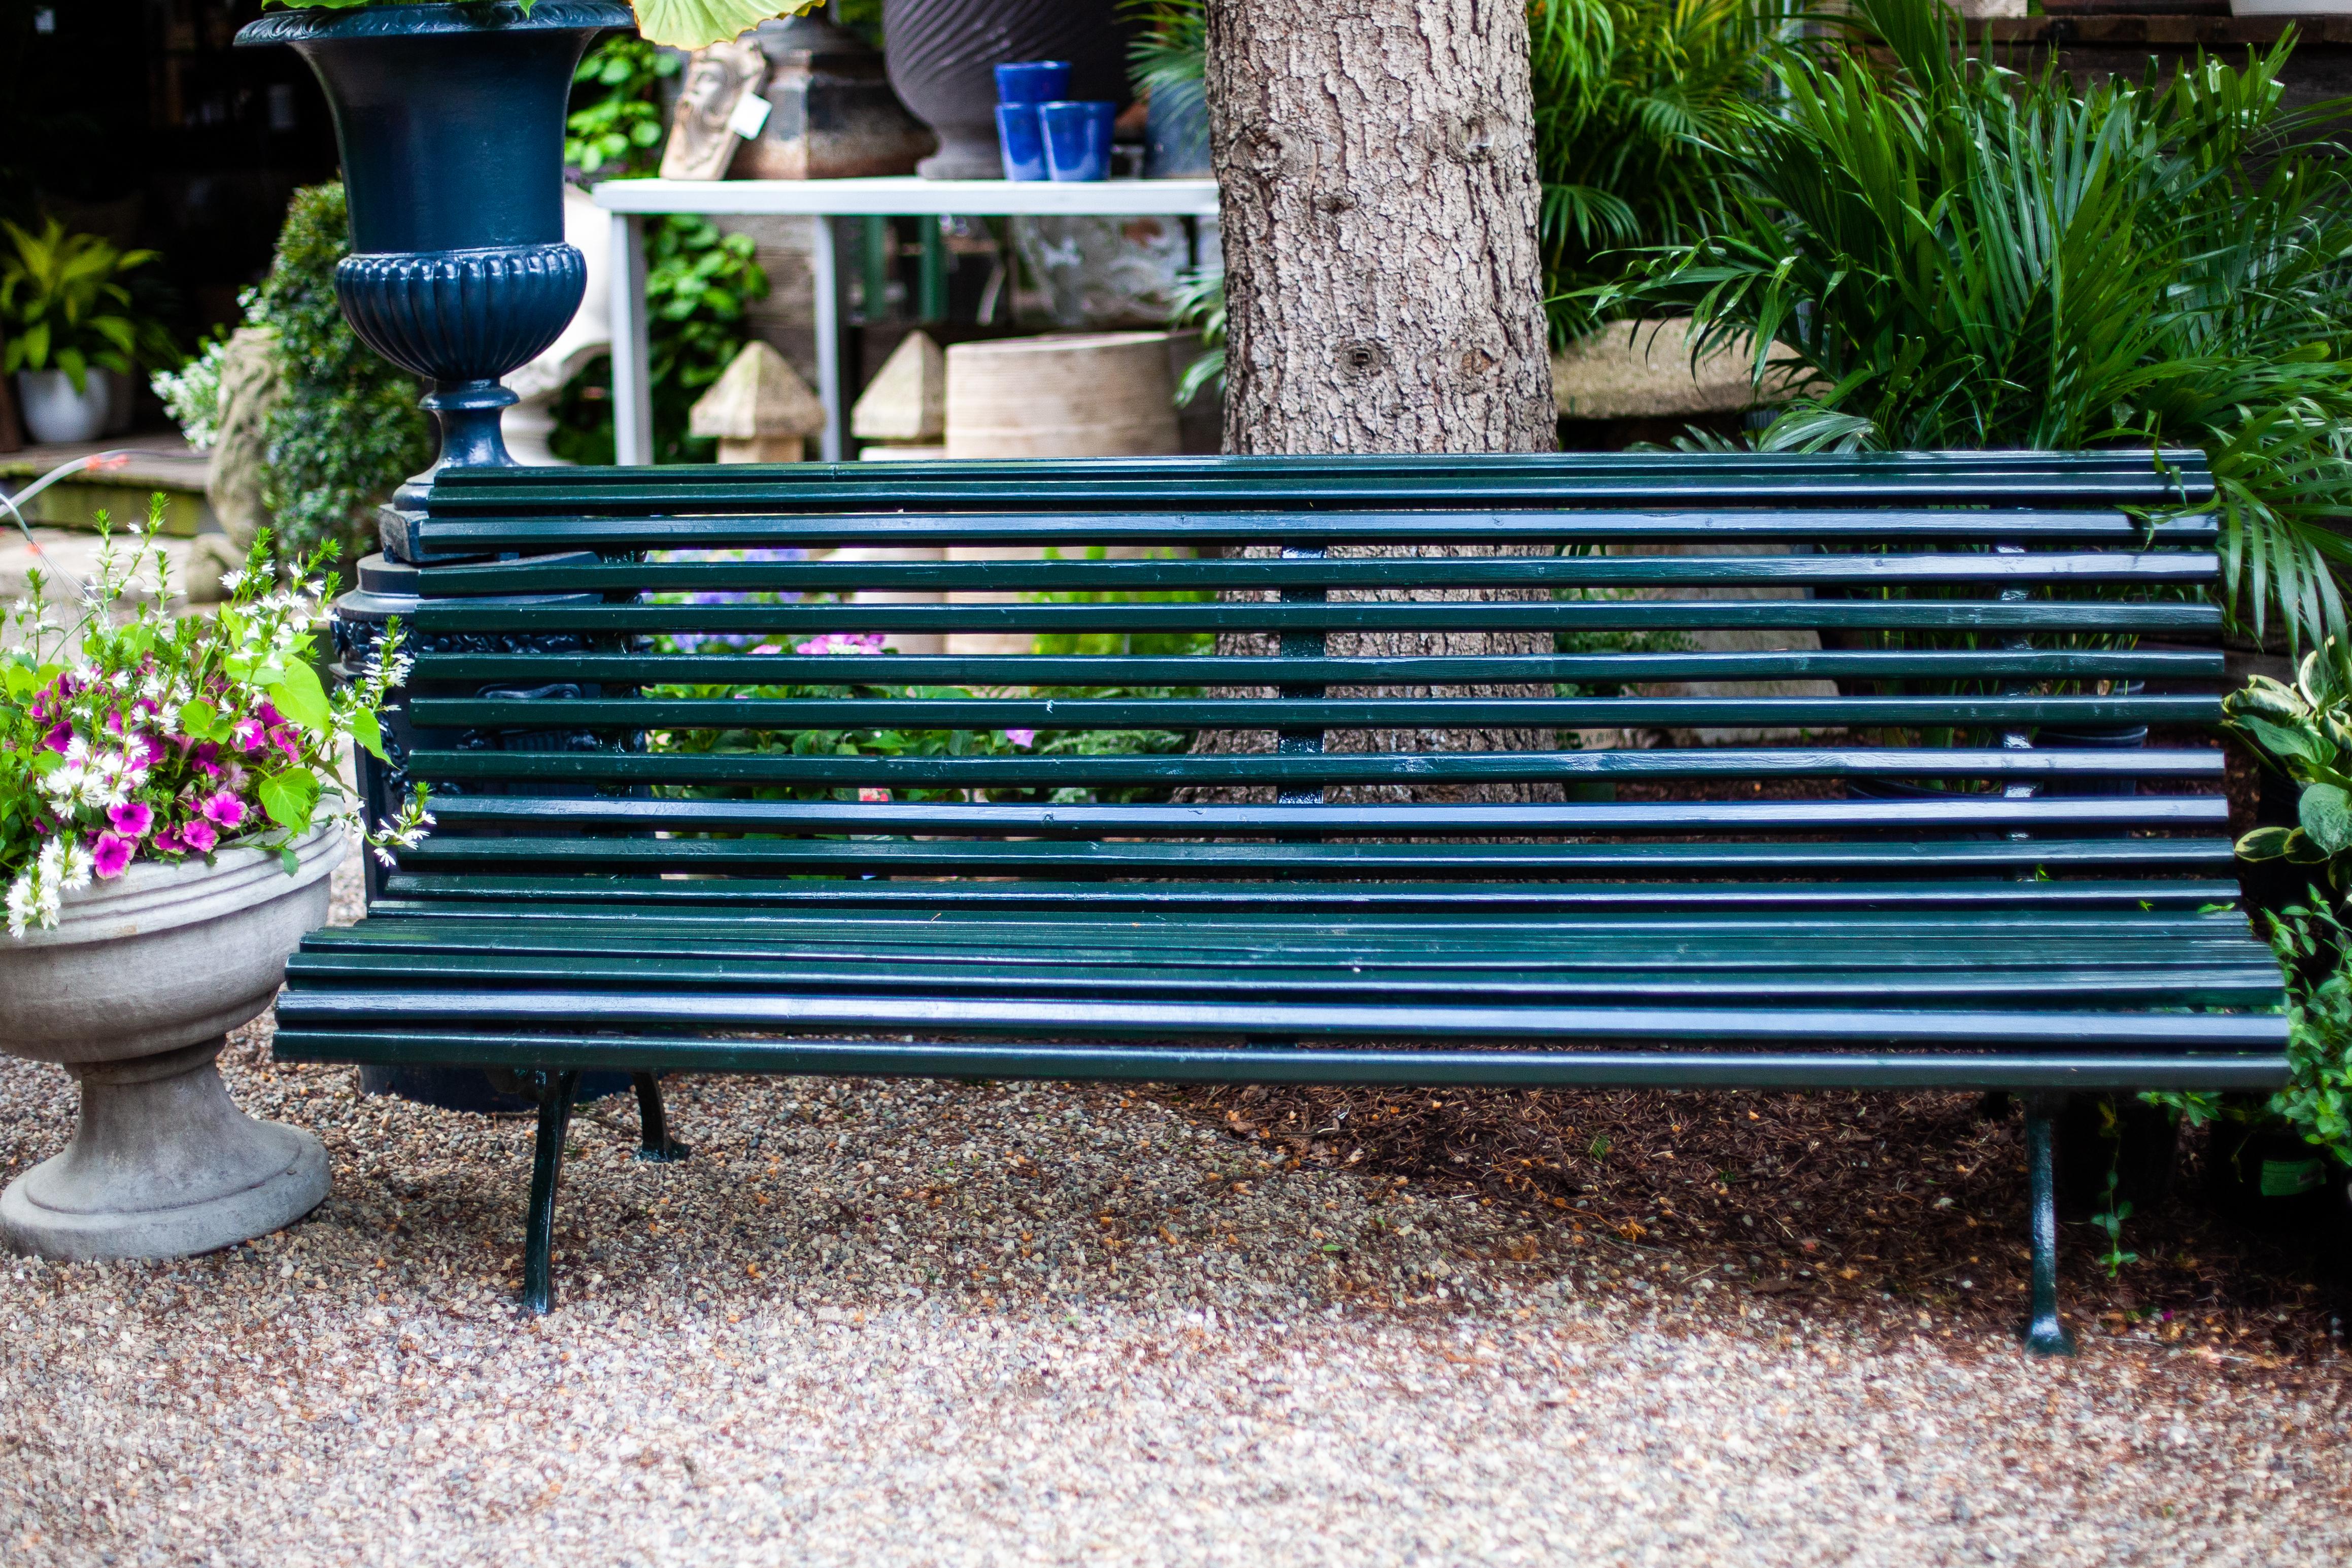 Magnifique banc public français qui a été récemment restauré dans une couleur verte brillante. Ce banc est simple mais exquis et rehausserait n'importe quel espace de jardin.